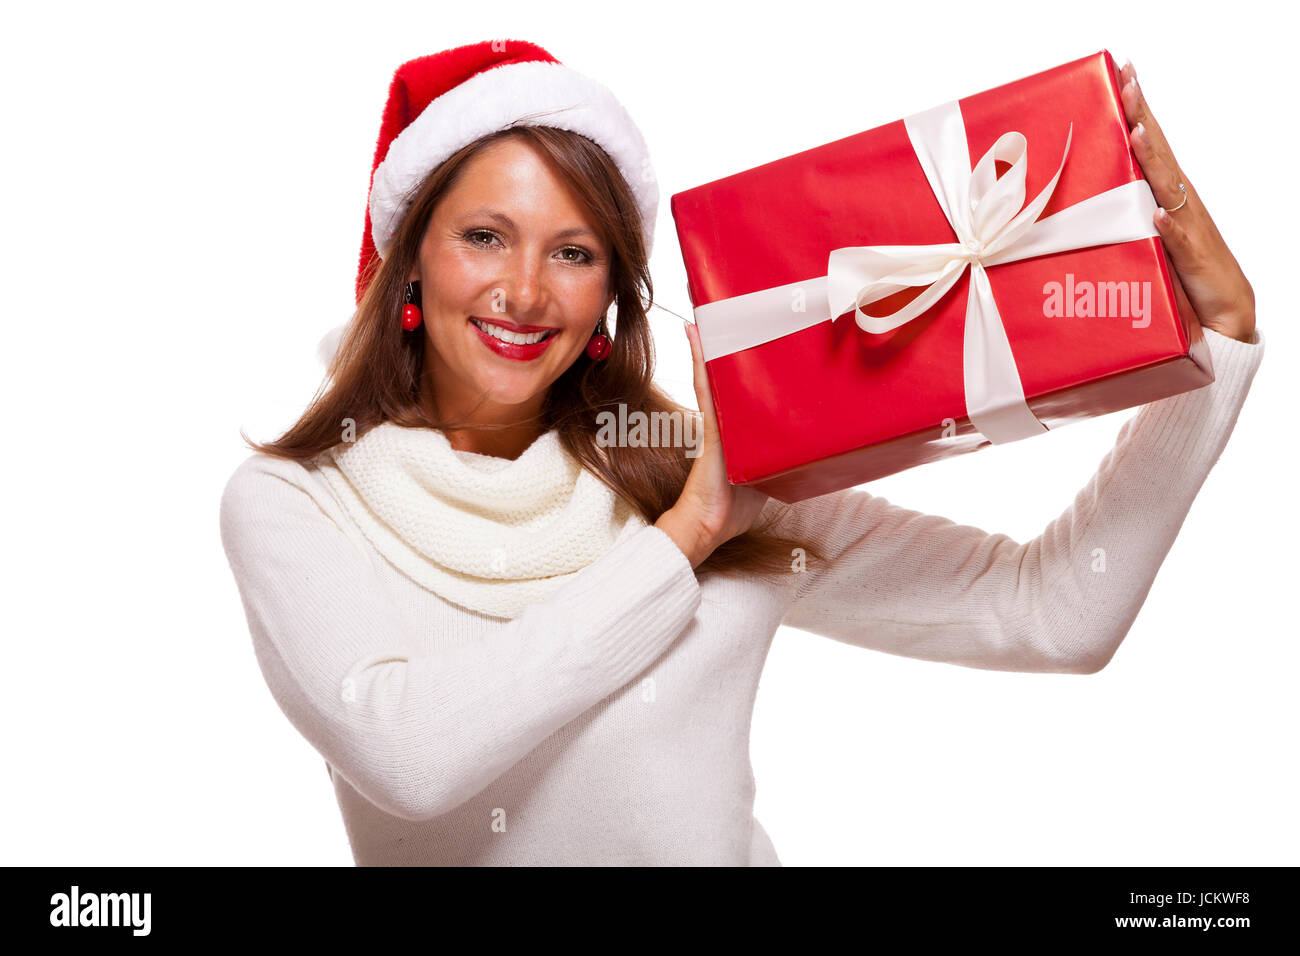 Hübsche brünette Frau mit Weihnachtsmütze und großem roten Geschenk fröhlich lachend isoliert vor weißem Hintergrund Stock Photo